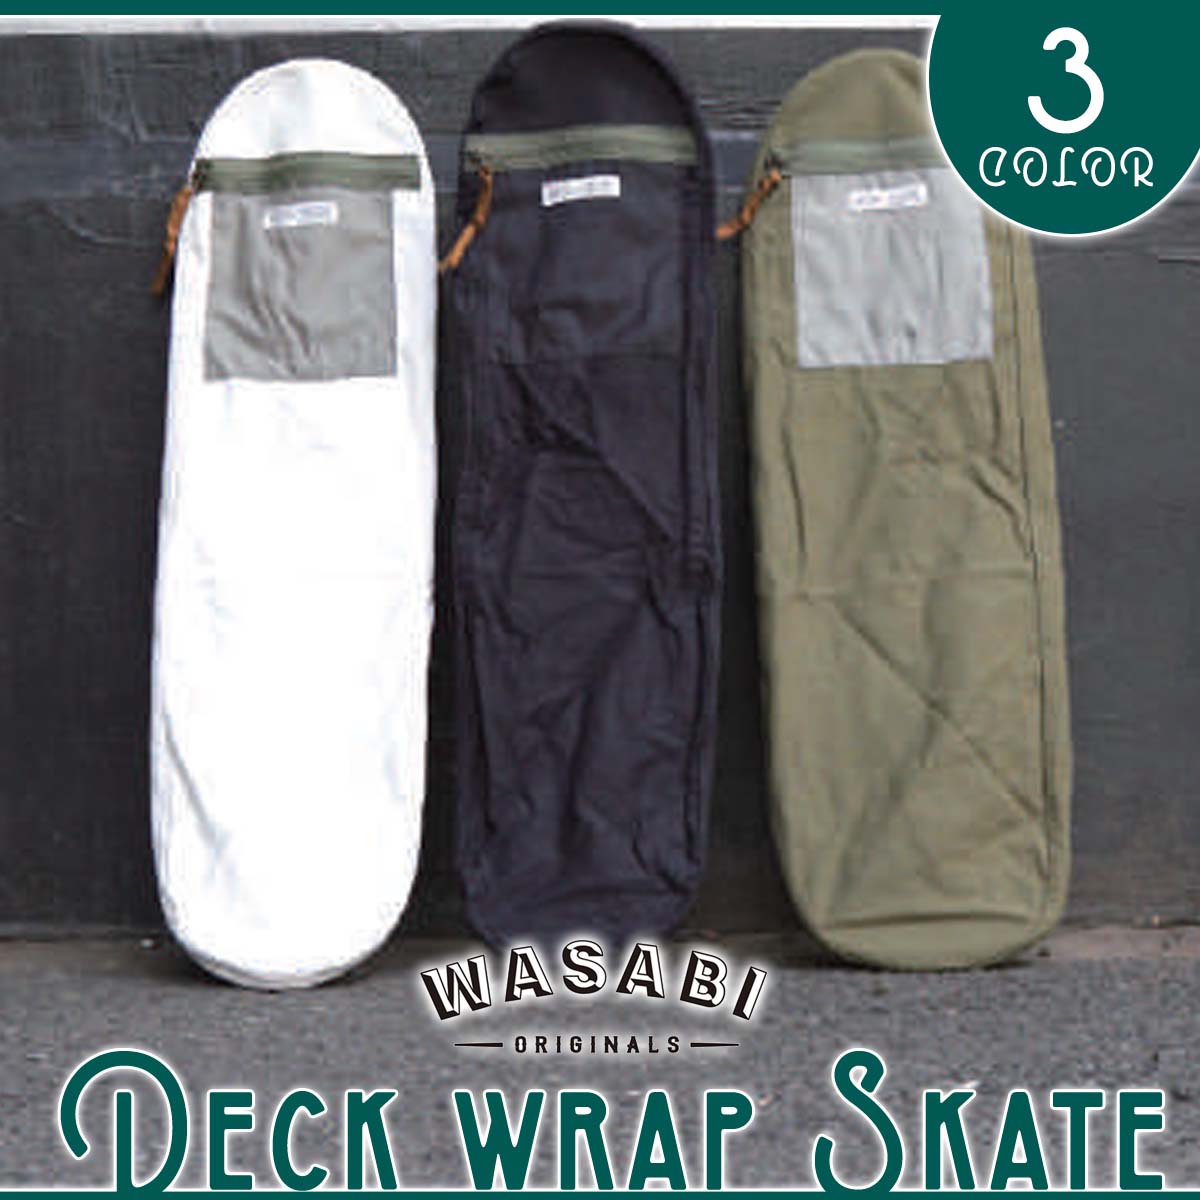 Wasabi originals スケートカバー WASABI Deck wrap Skate スタイリッシュにボードを持ち歩きたい方におすすめ！ 数秒で脱着。 簡単に、そして格好良くスケートを持ち運ぶ。 薄手の帆布素材で力強くデッキを包み込み、手持ちでも車内でも擦れずに持ち運べます。 小型ファスナーポケットが装備されてます。 折り畳めば、 小さくパックされ、収納も便利です。 ■ 商品詳細 ■ ■素材： Thin canvas cotton 100% ■カラー： Green Black White ■サイズ： ワンサイズ(約81×約21.5×約7cm) Pocket size:約16×19cm 【ご予約注文につきまして】 ご予約商品（入荷待ち商品）につきまして、メーカーより入荷次第即日発送処理を進めておりますが、 商品により納期の延滞や、品番・カラーなどで一部未入荷となる場合もございますので、予めご了承の上ご注文のほどお願い致します。 ※納期延滞によるご注文キャンセルは可能です。 ※納期の遅れや製造中止、デザイン変更が起こる可能性がございます。 予めご了承頂きますようお願い申し上げます。 またご購入時にご利用の期間限定クーポンやポイントなどの期限が過ぎている場合や、 期限切れ以外の理由でも当店よりご返還ができない場合につきましては、 当店でクーポンやポイントの保証は出来兼ねますので、予めご了承頂きますようお願い致します。 ○デザイン等、予告なしに変更となる場合があります。ご了承ください。 ○掲載商品の色は、できる限り現品と同じになるよう努めておりますが、ご使用のパソコン環境により多少色合いが異なる場合がございます。著しい色の相違は御座いませんのでご安心ください。 〇商品ページに記載のカラー表記ですが、カタログやJANコード作成時などにメーカーで割り当てたカラー表示となり実際の商品と色味が異なる場合がございますが予めご了承下さい。 〇また柄物商品の場合などは、商品により柄の位置や入り方に個体差が生じてしまいます。商品ページの写真とイメージが異なる場合がございますが予めご了承下さい。 ○お急ぎのお客様は、ご確認していただく事をお勧め致します。 メーカー希望小売価格はメーカーサイトに基づいて掲載しています